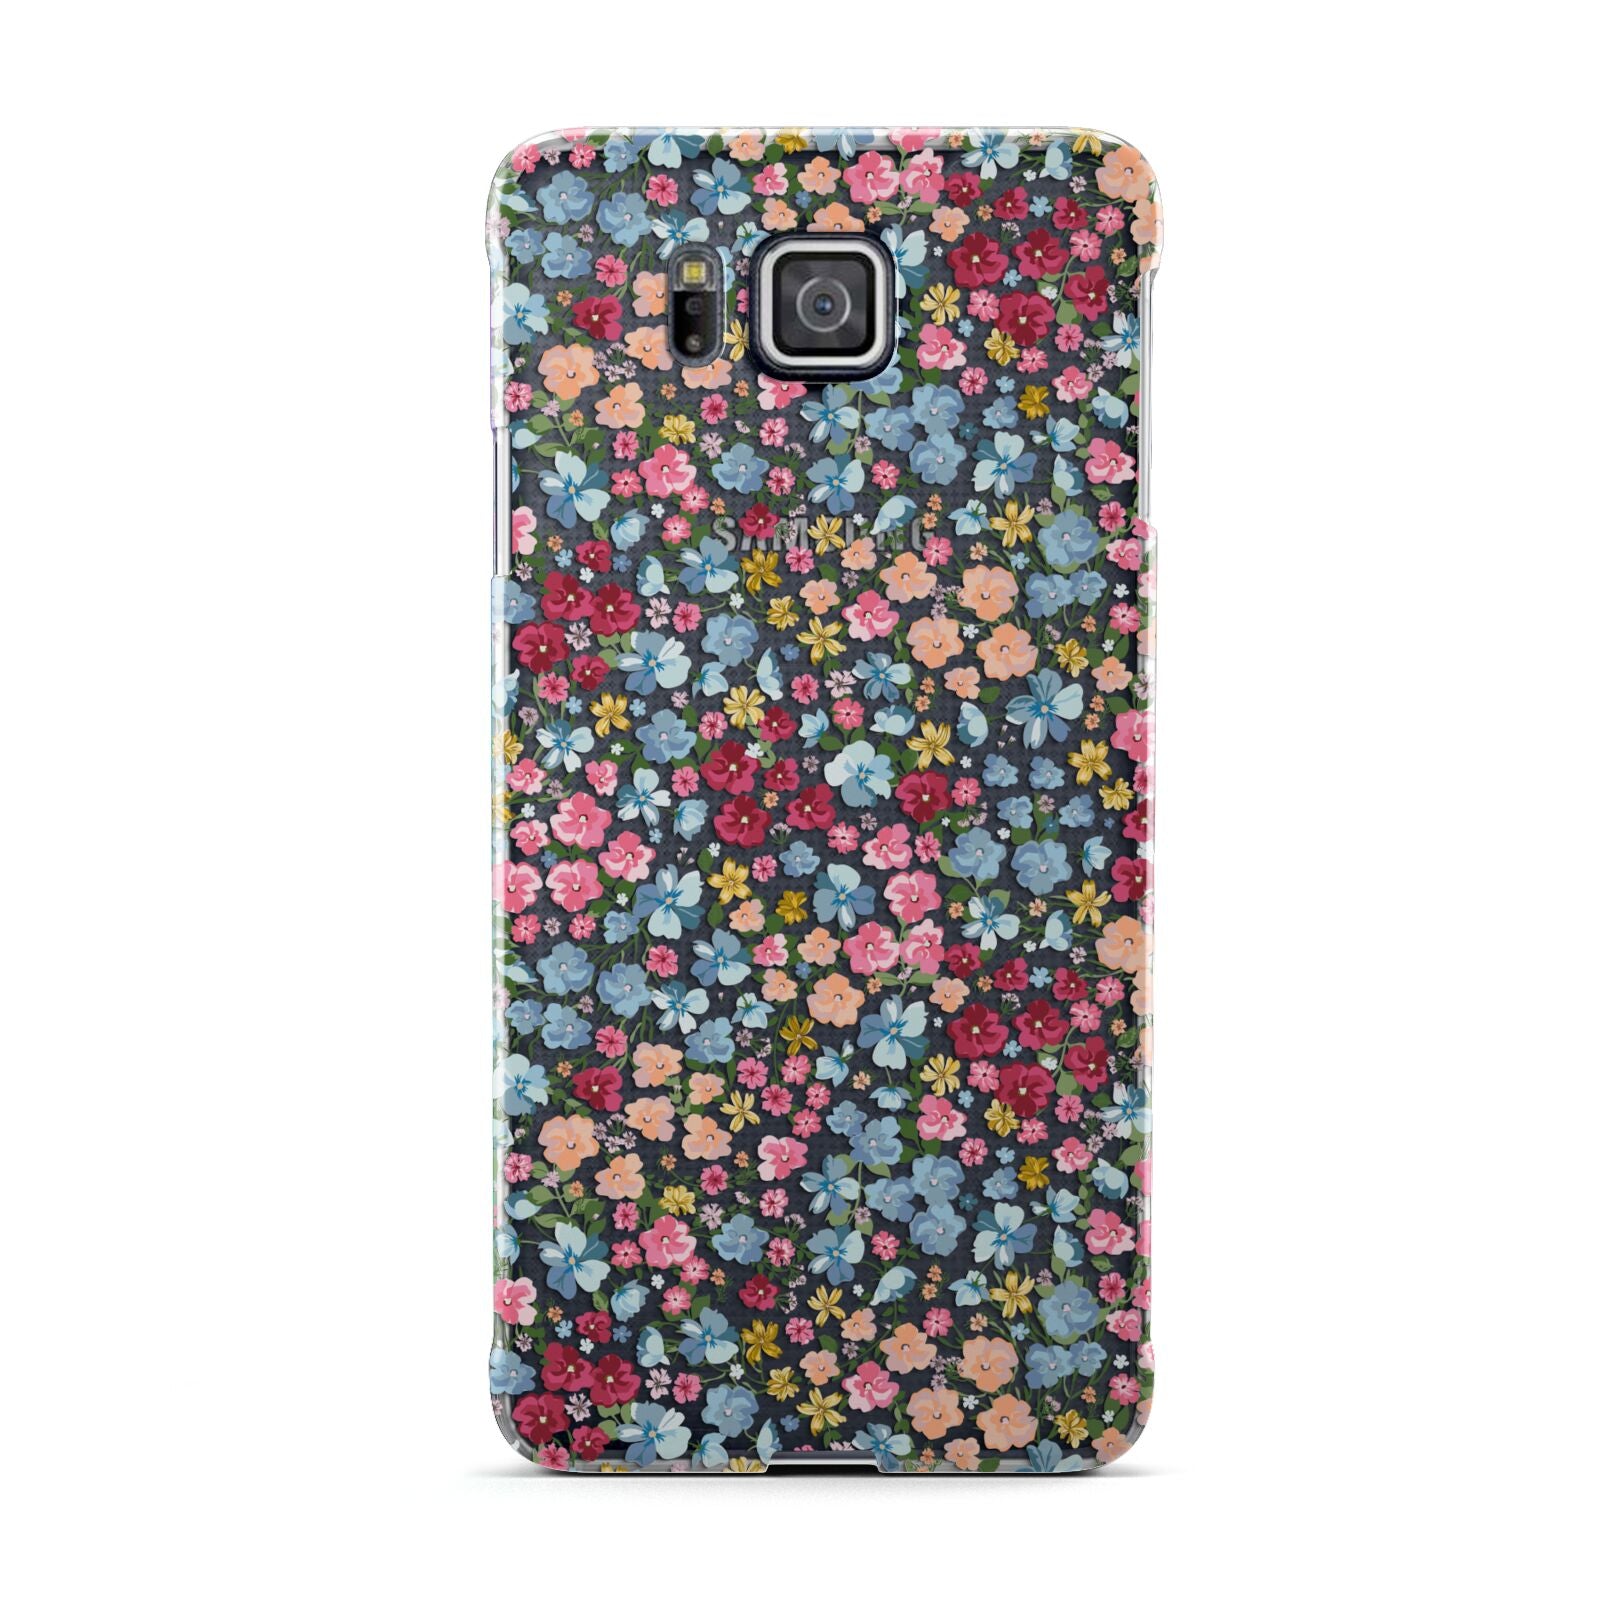 Floral Meadow Samsung Galaxy Alpha Case